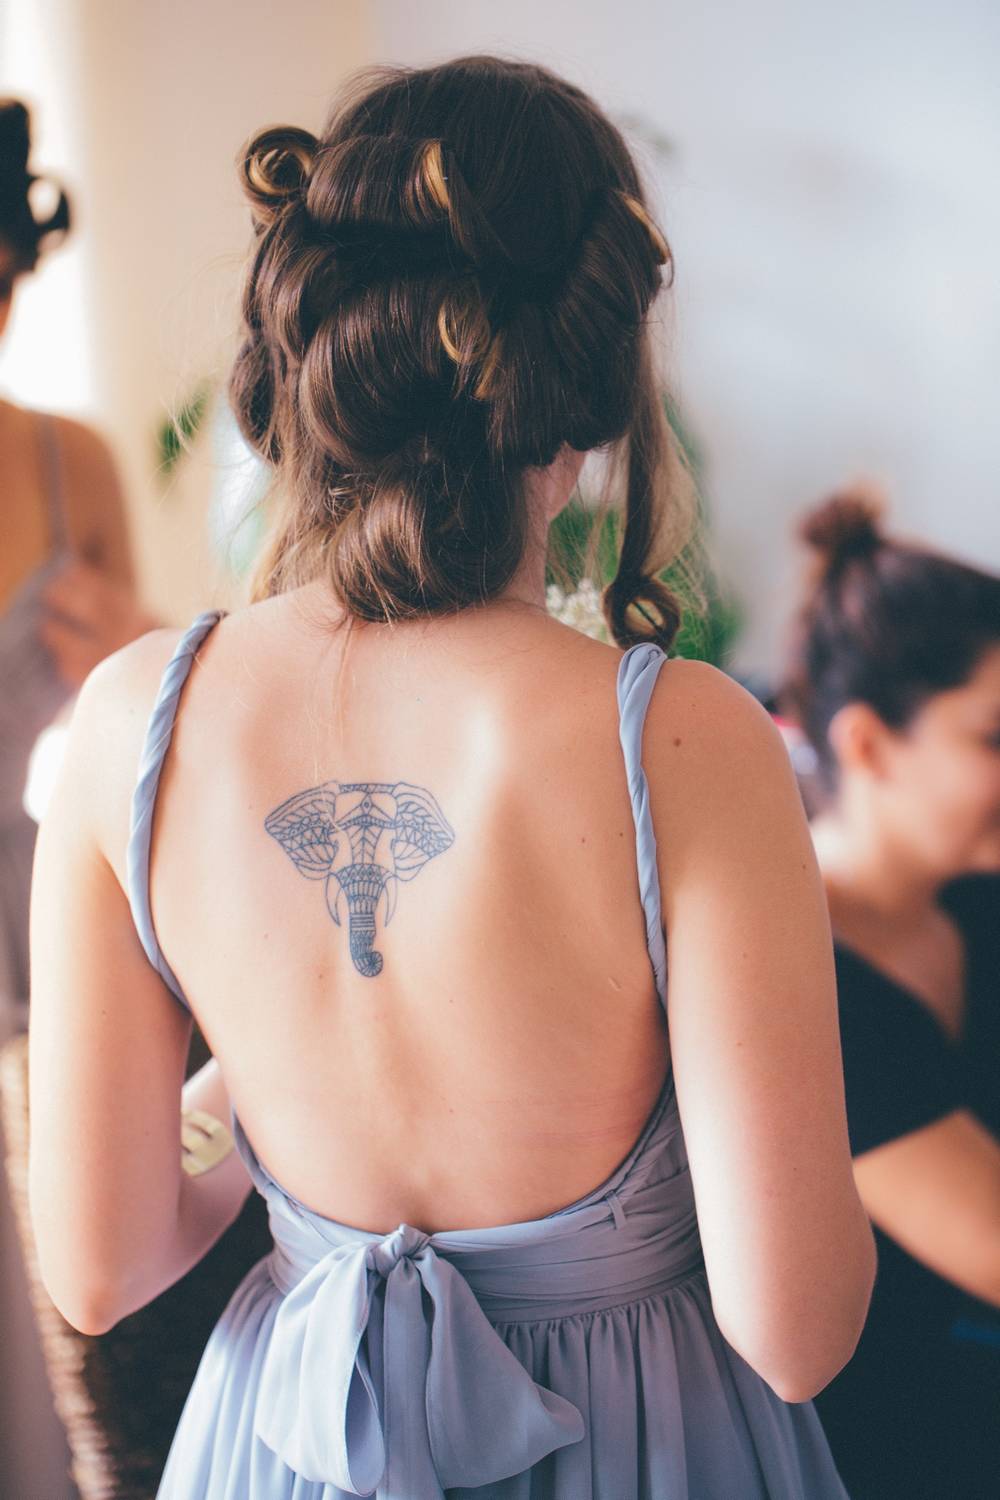 Etapy gojenia się tatuaży. Co powinno nas zaniepokoić?